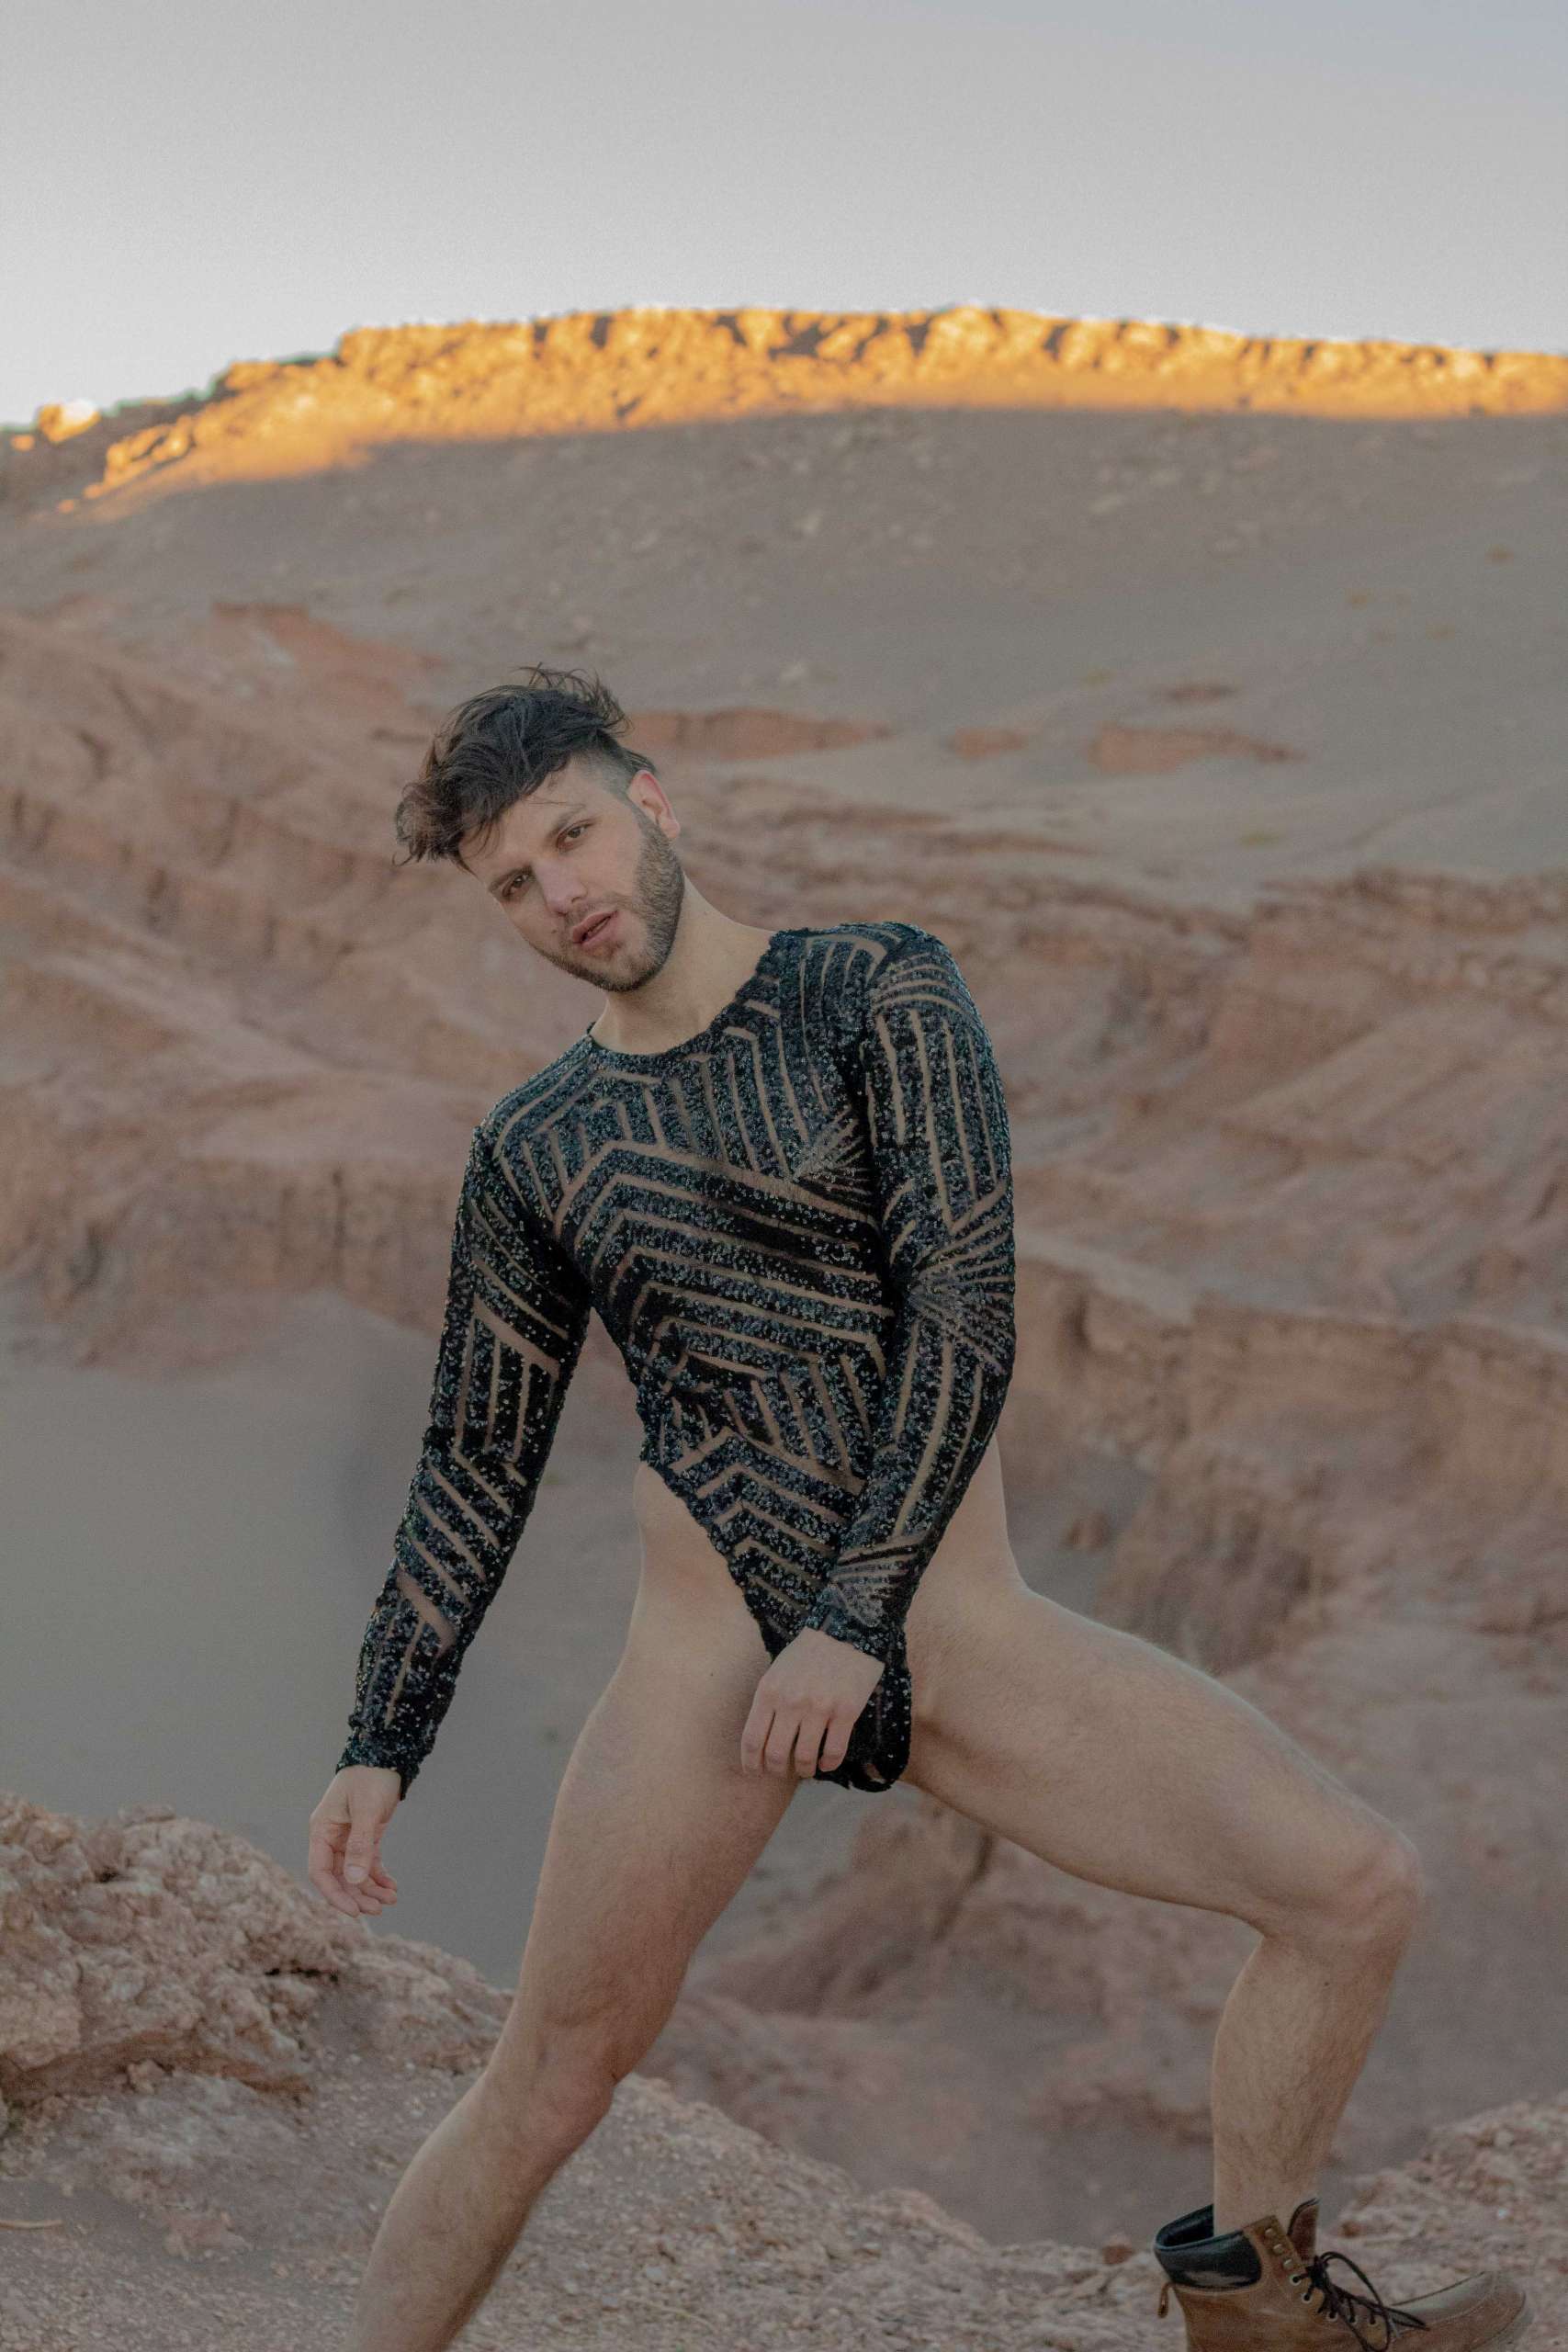 Vedran Skorin desfiló su nueva colección de bodys masculinos en el Desierto de Atacama